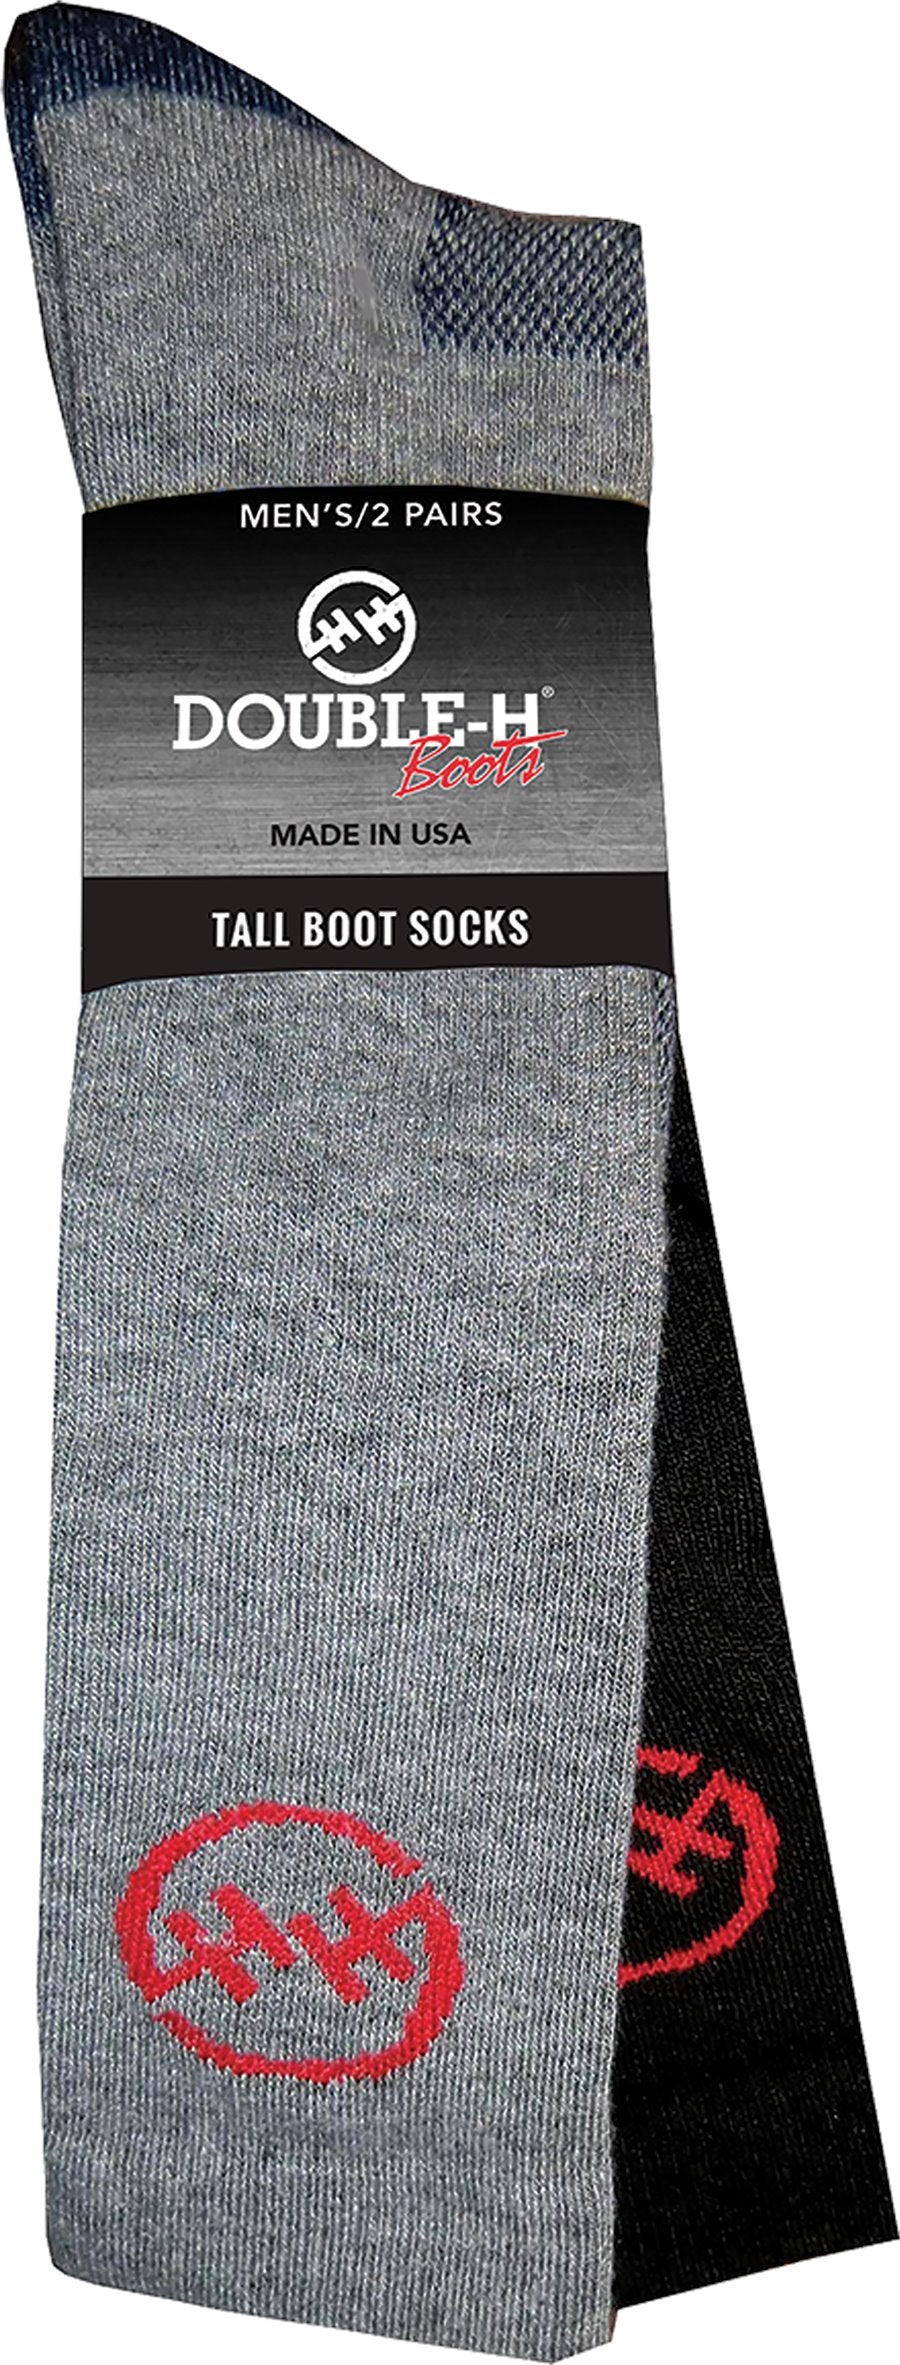 mens tall boot socks